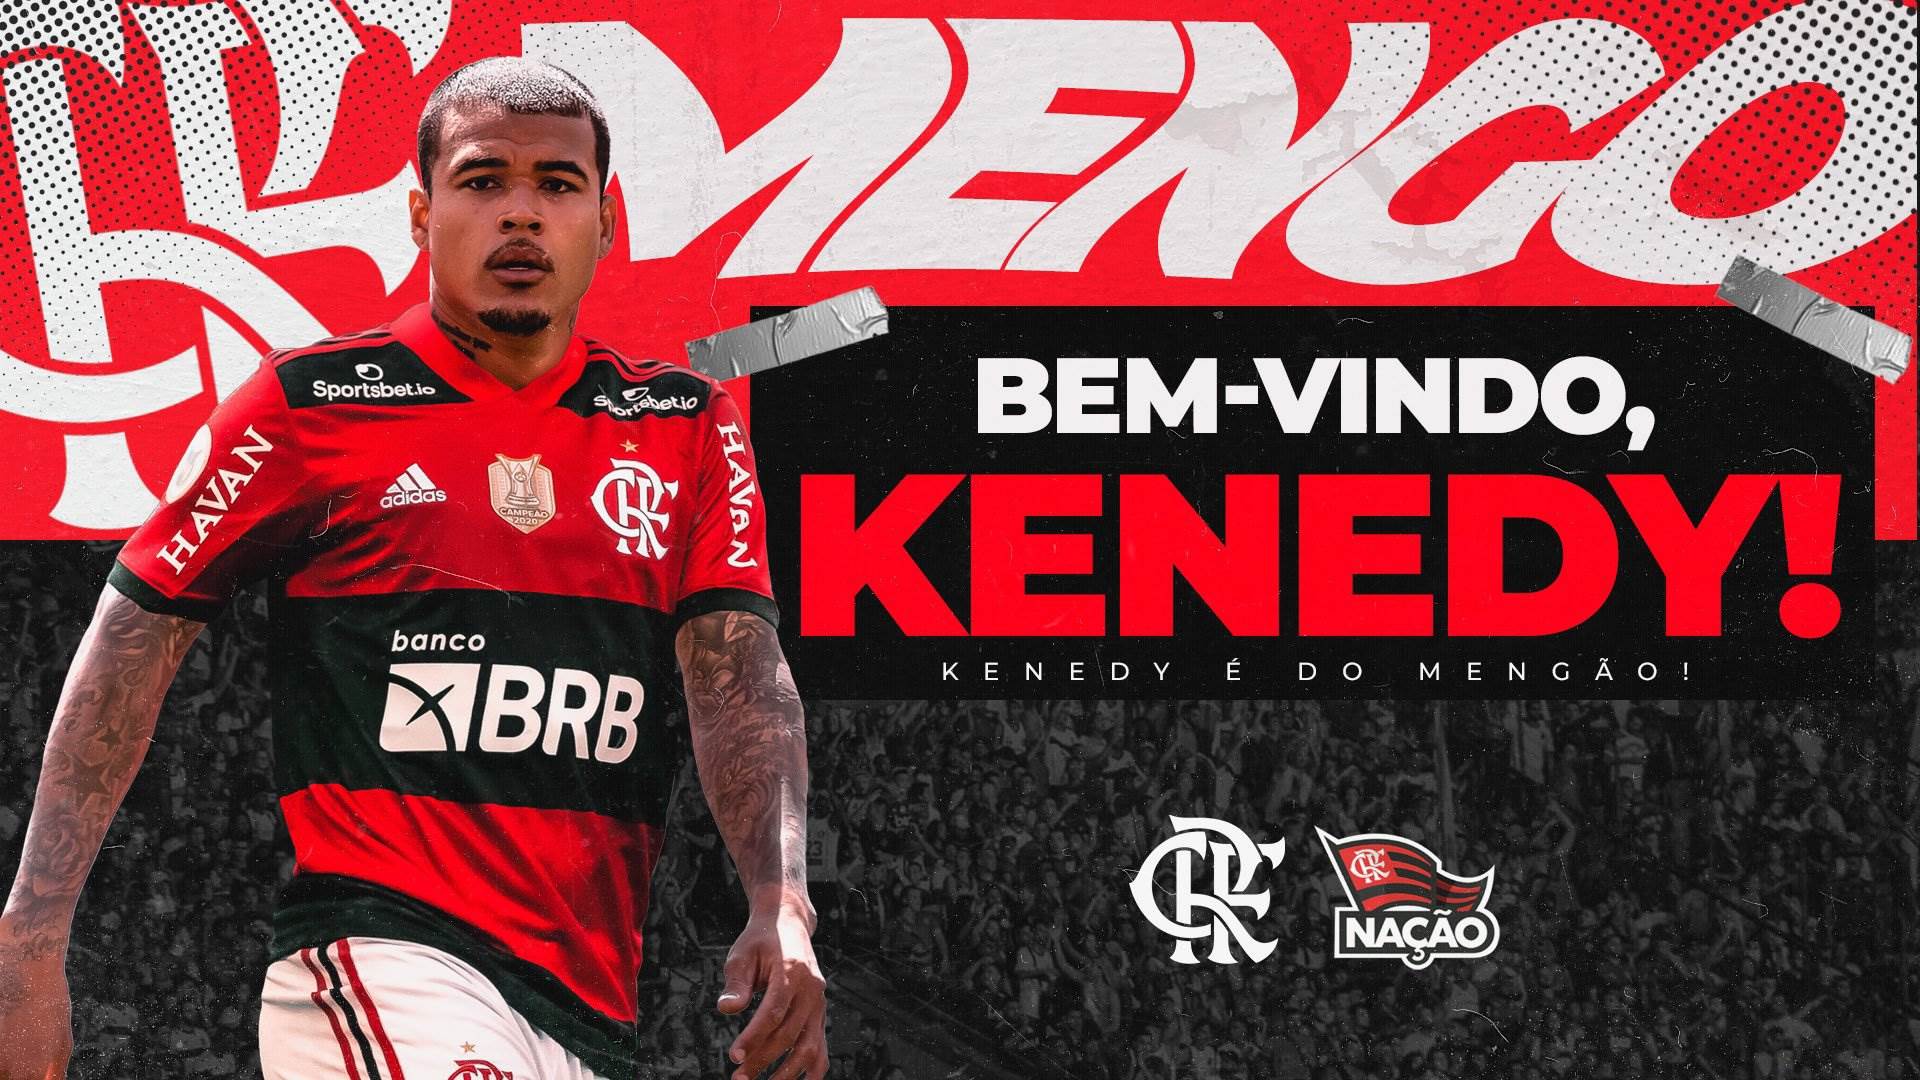 Kenedy – Chelsea to Flamengo (loan) 